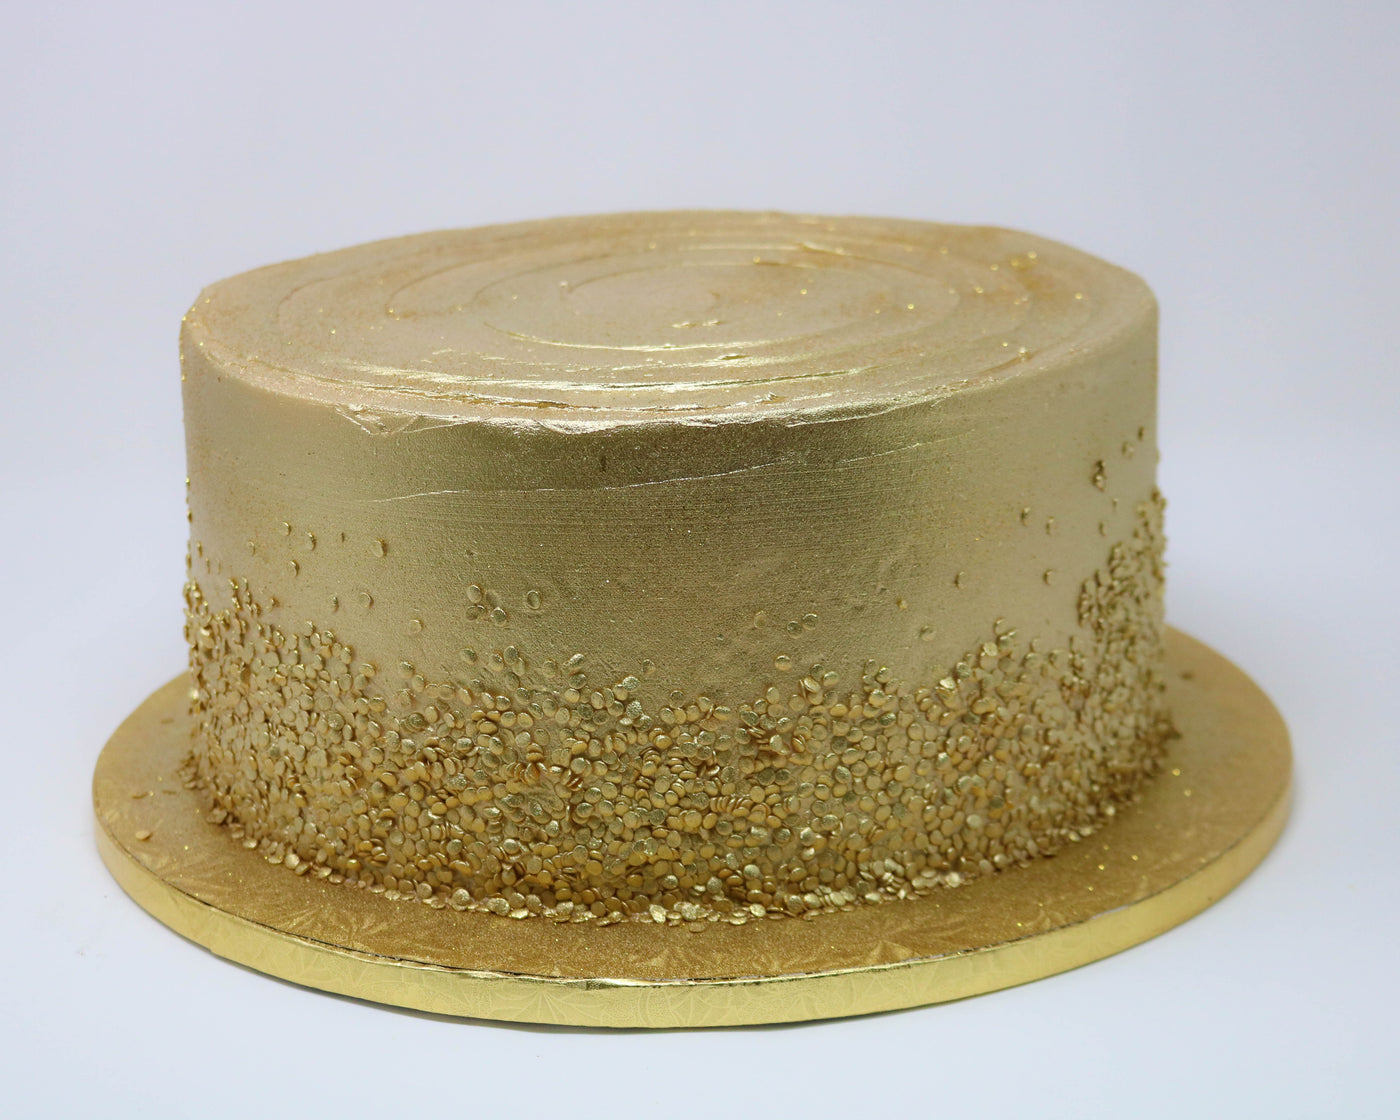 All golden cake